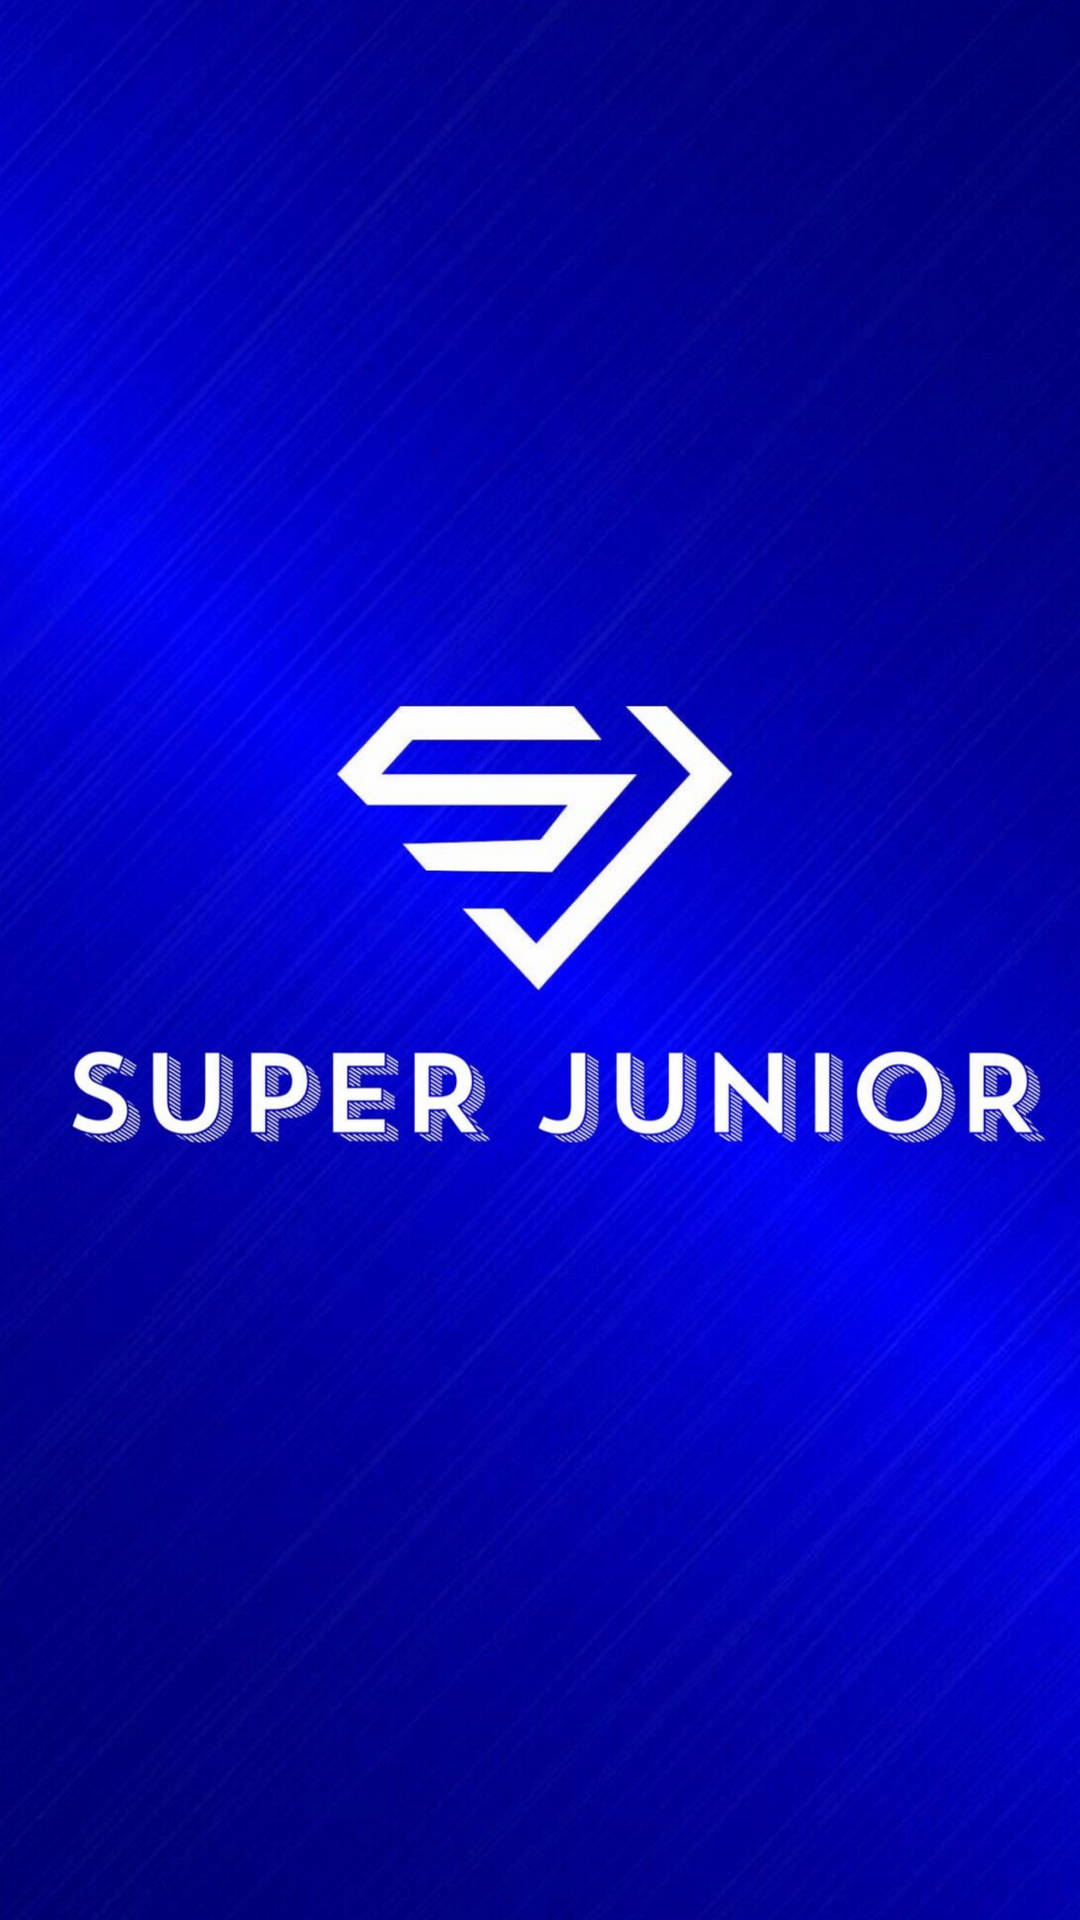 Superjunior Einfaches Logo Wallpaper